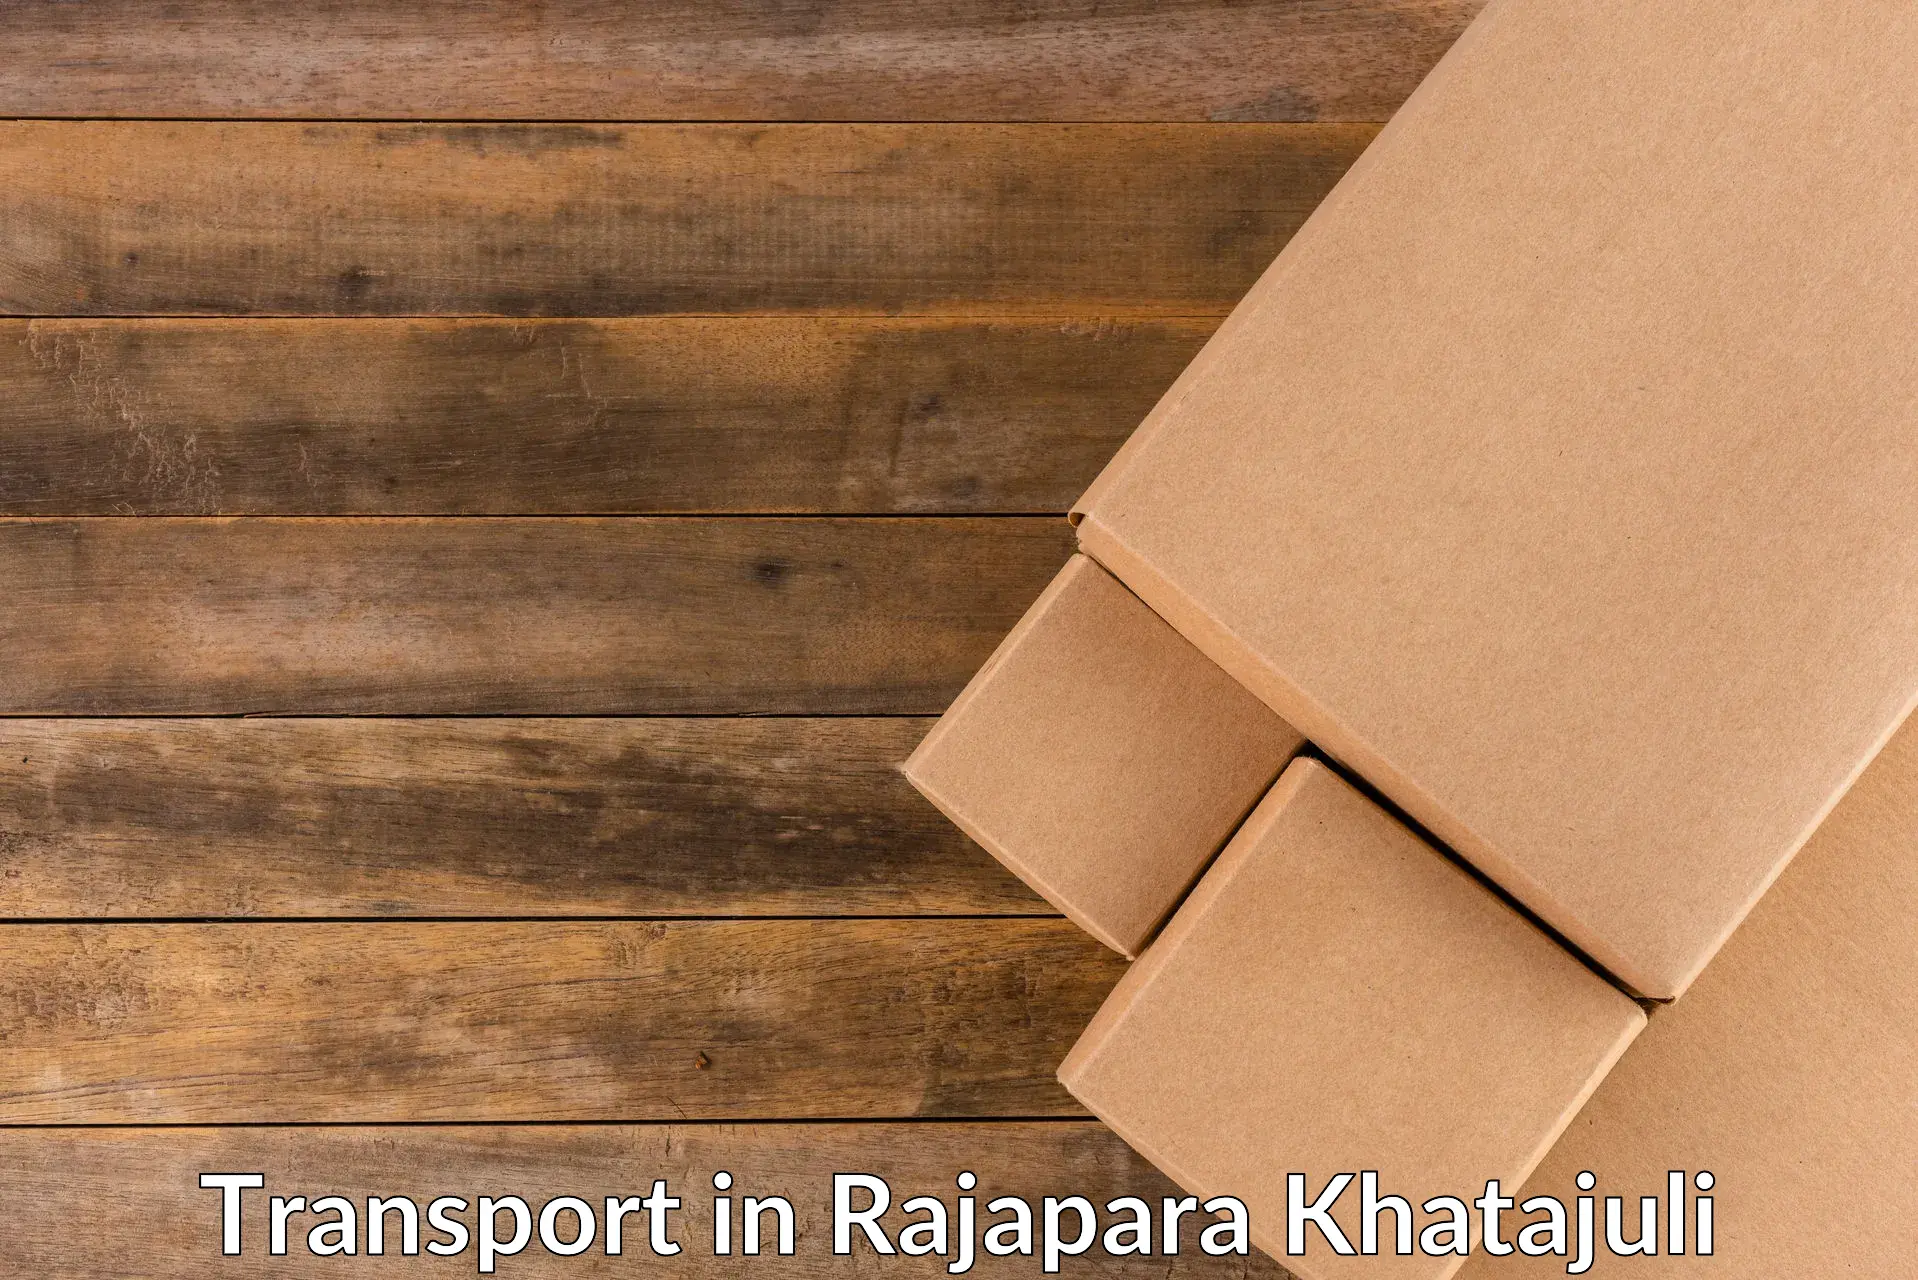 Online transport in Rajapara Khatajuli